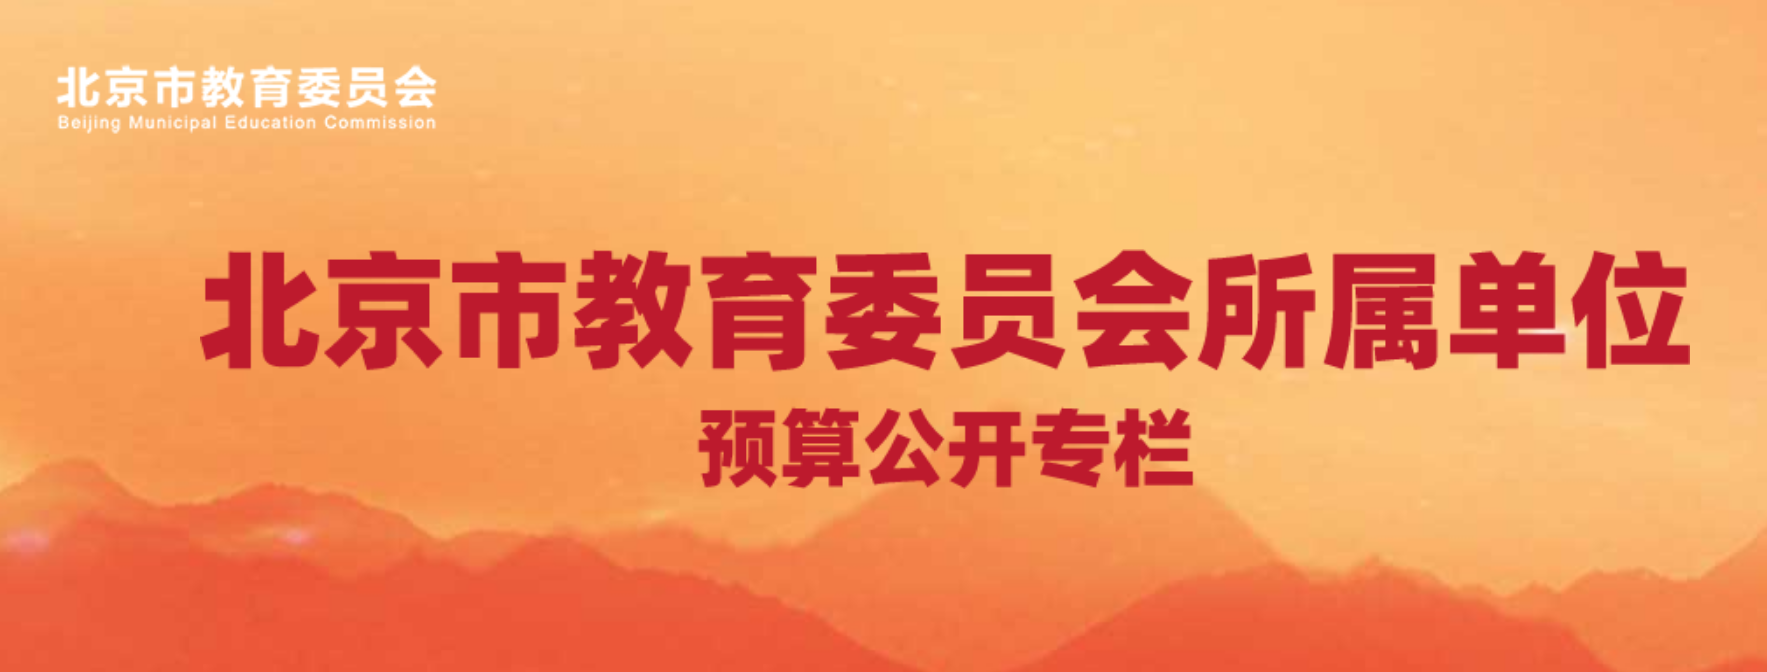 北京市教育委员会所属预算单位2021年预算公开.png